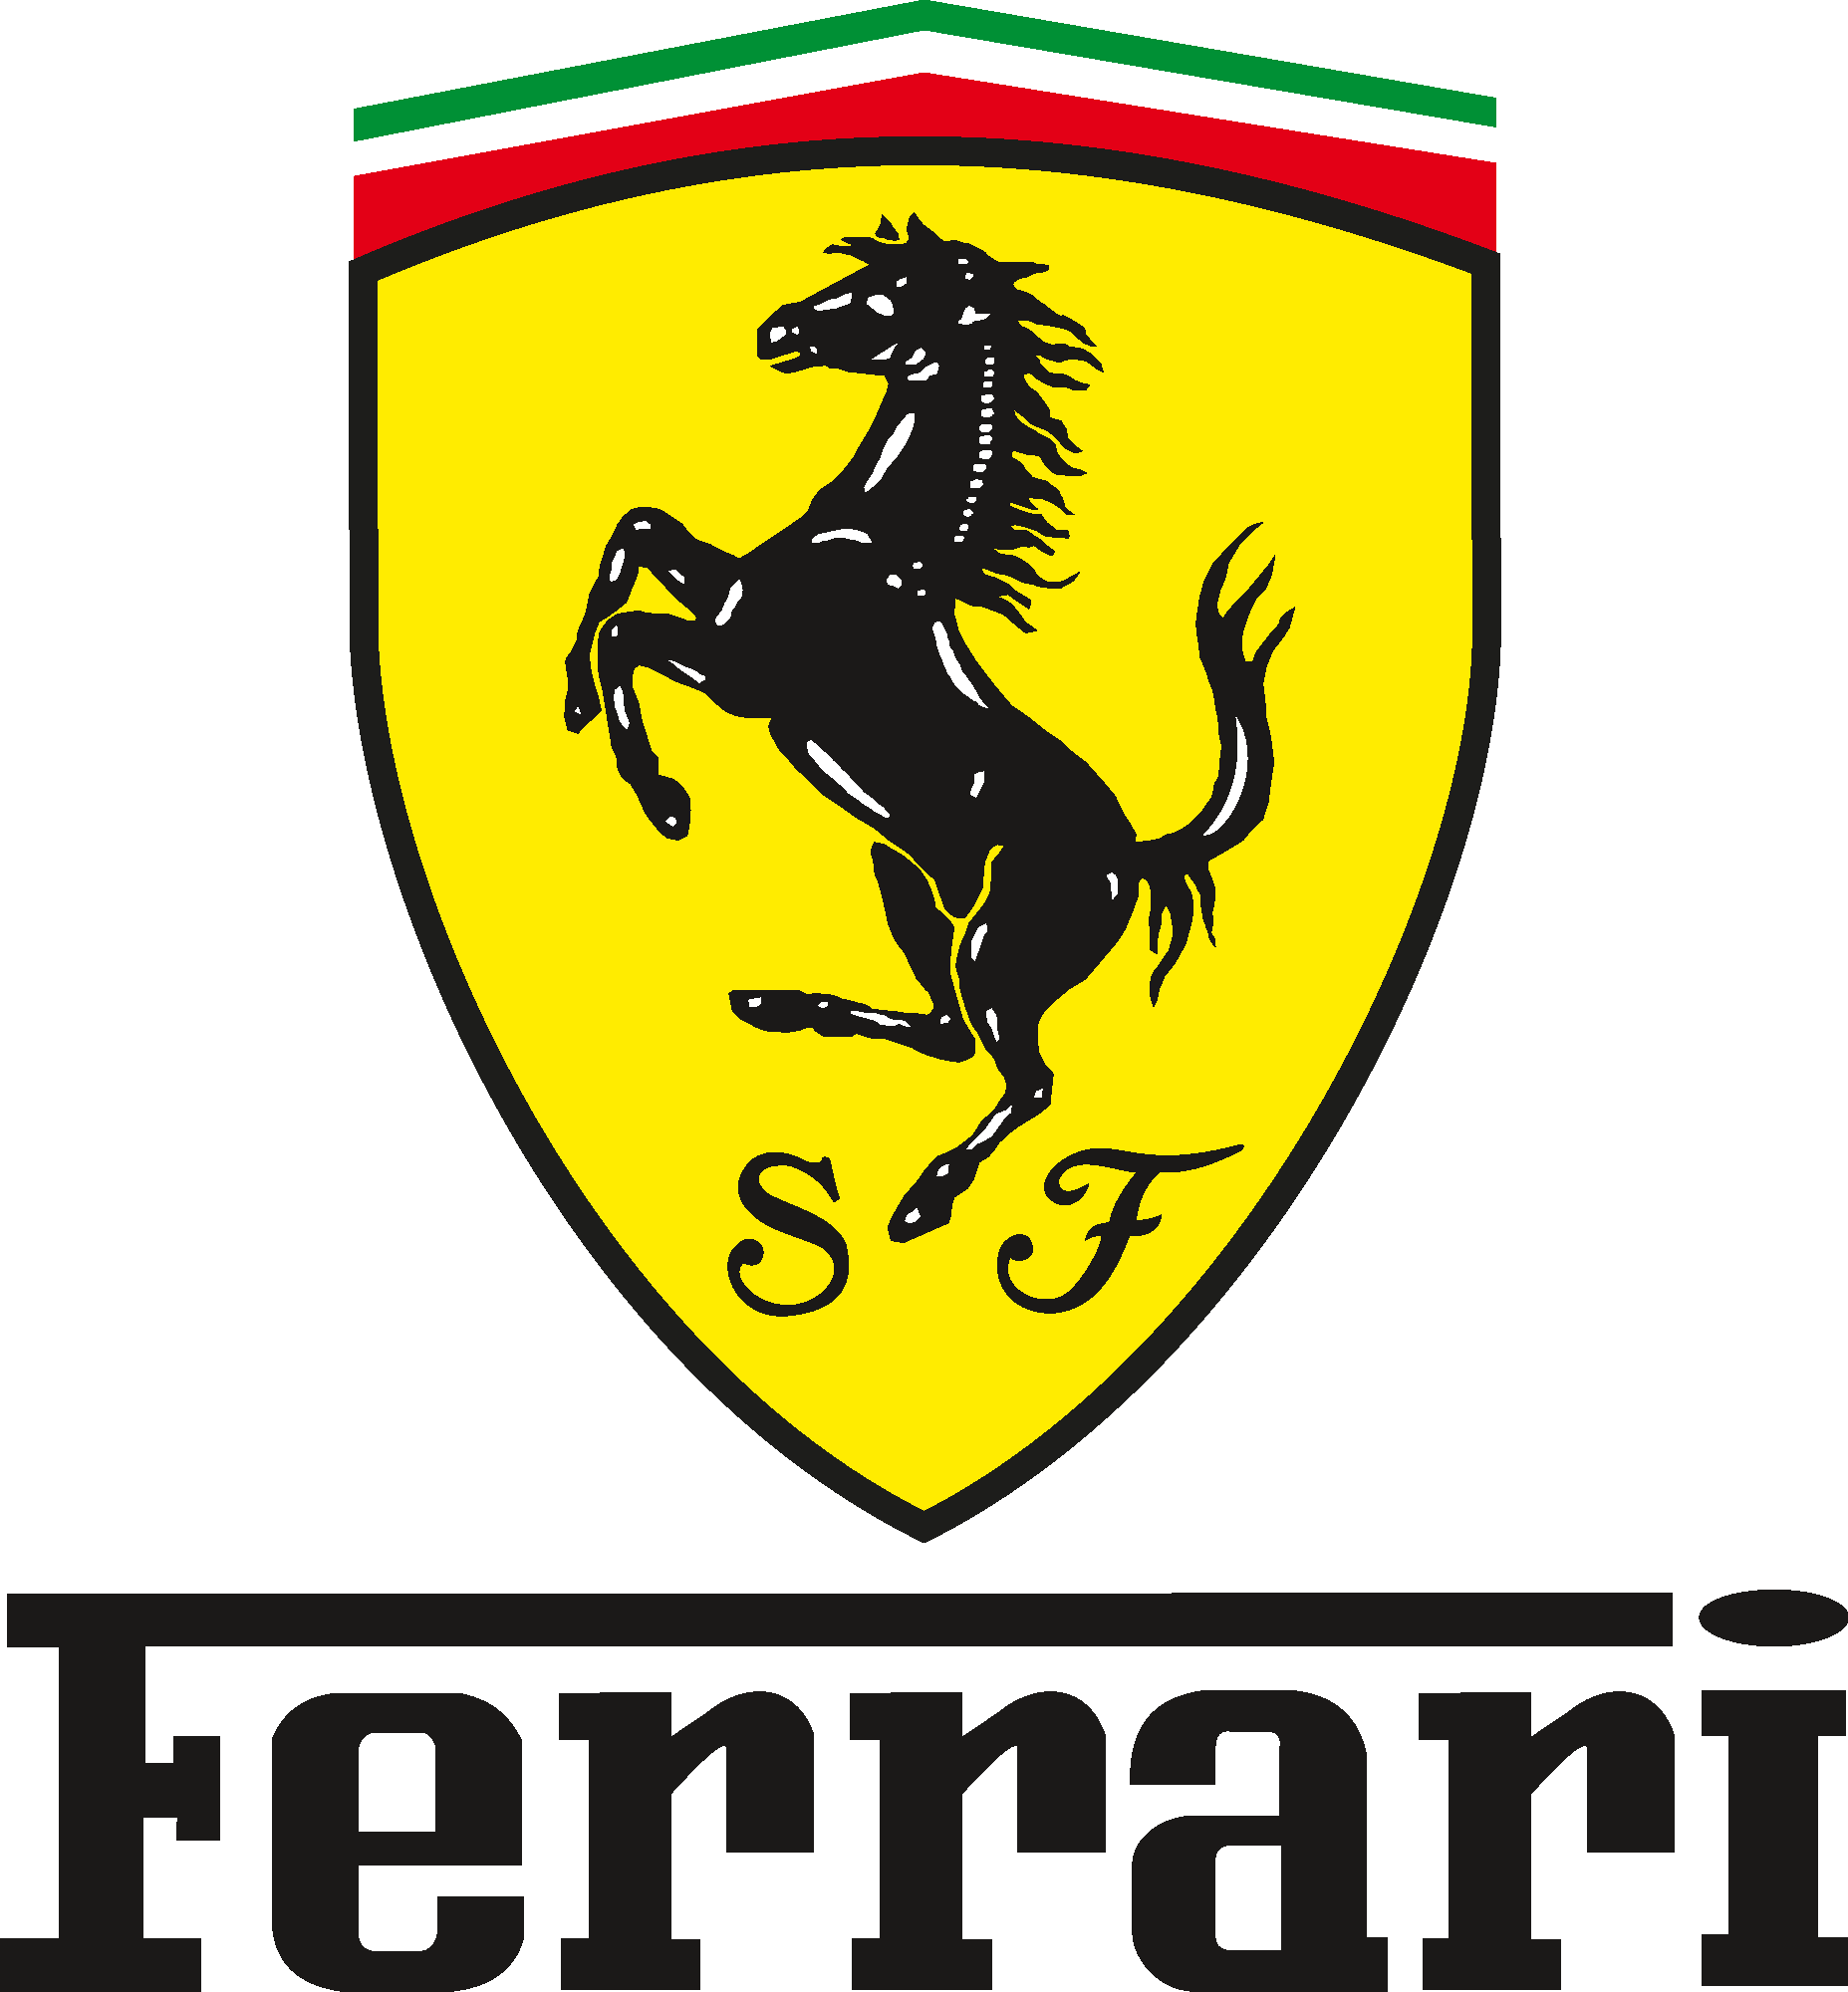 Ferrari Car Warranty